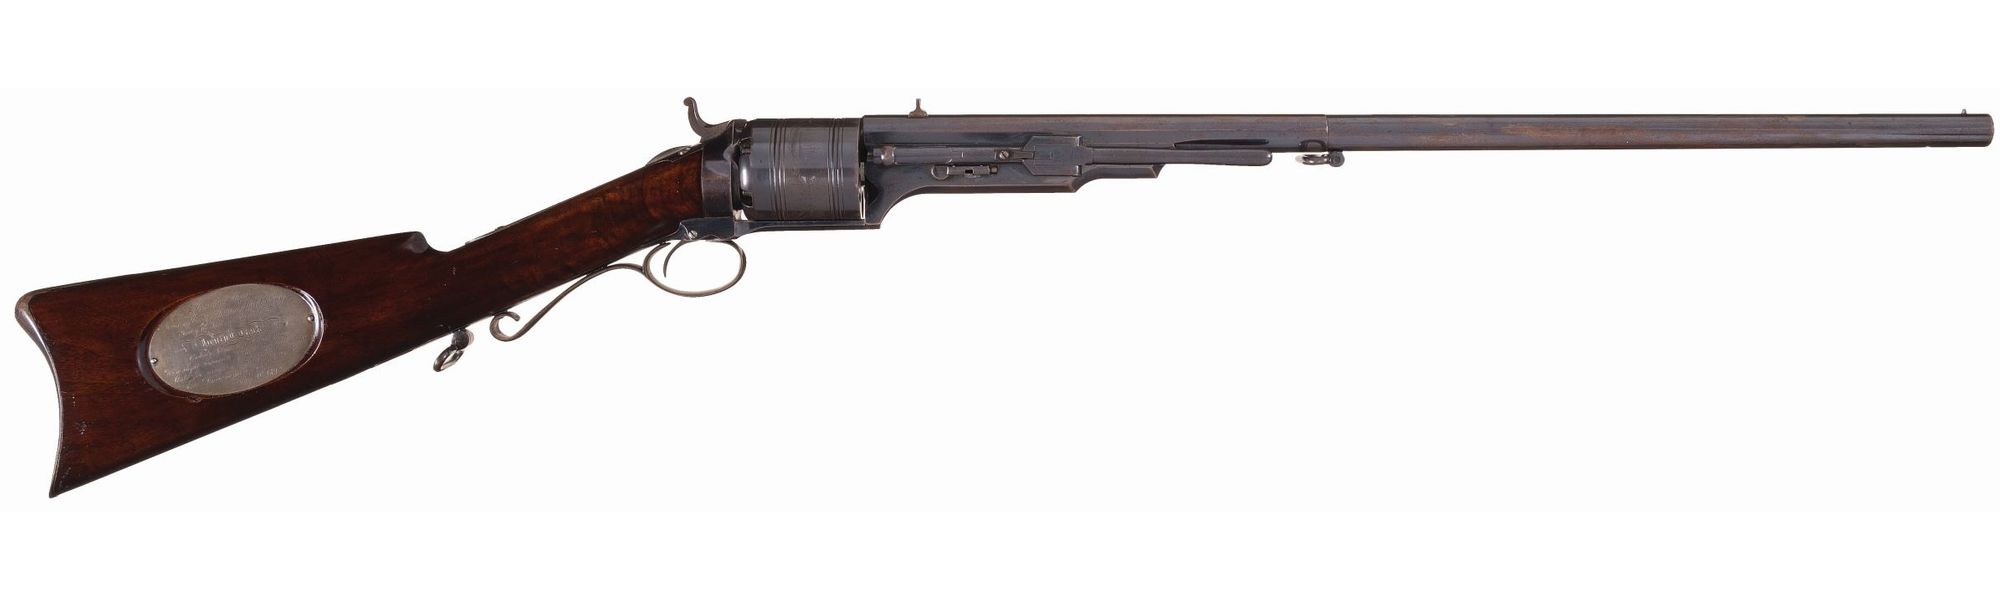 Colt Paterson Model 1839 Carbine Presented by RI Governor